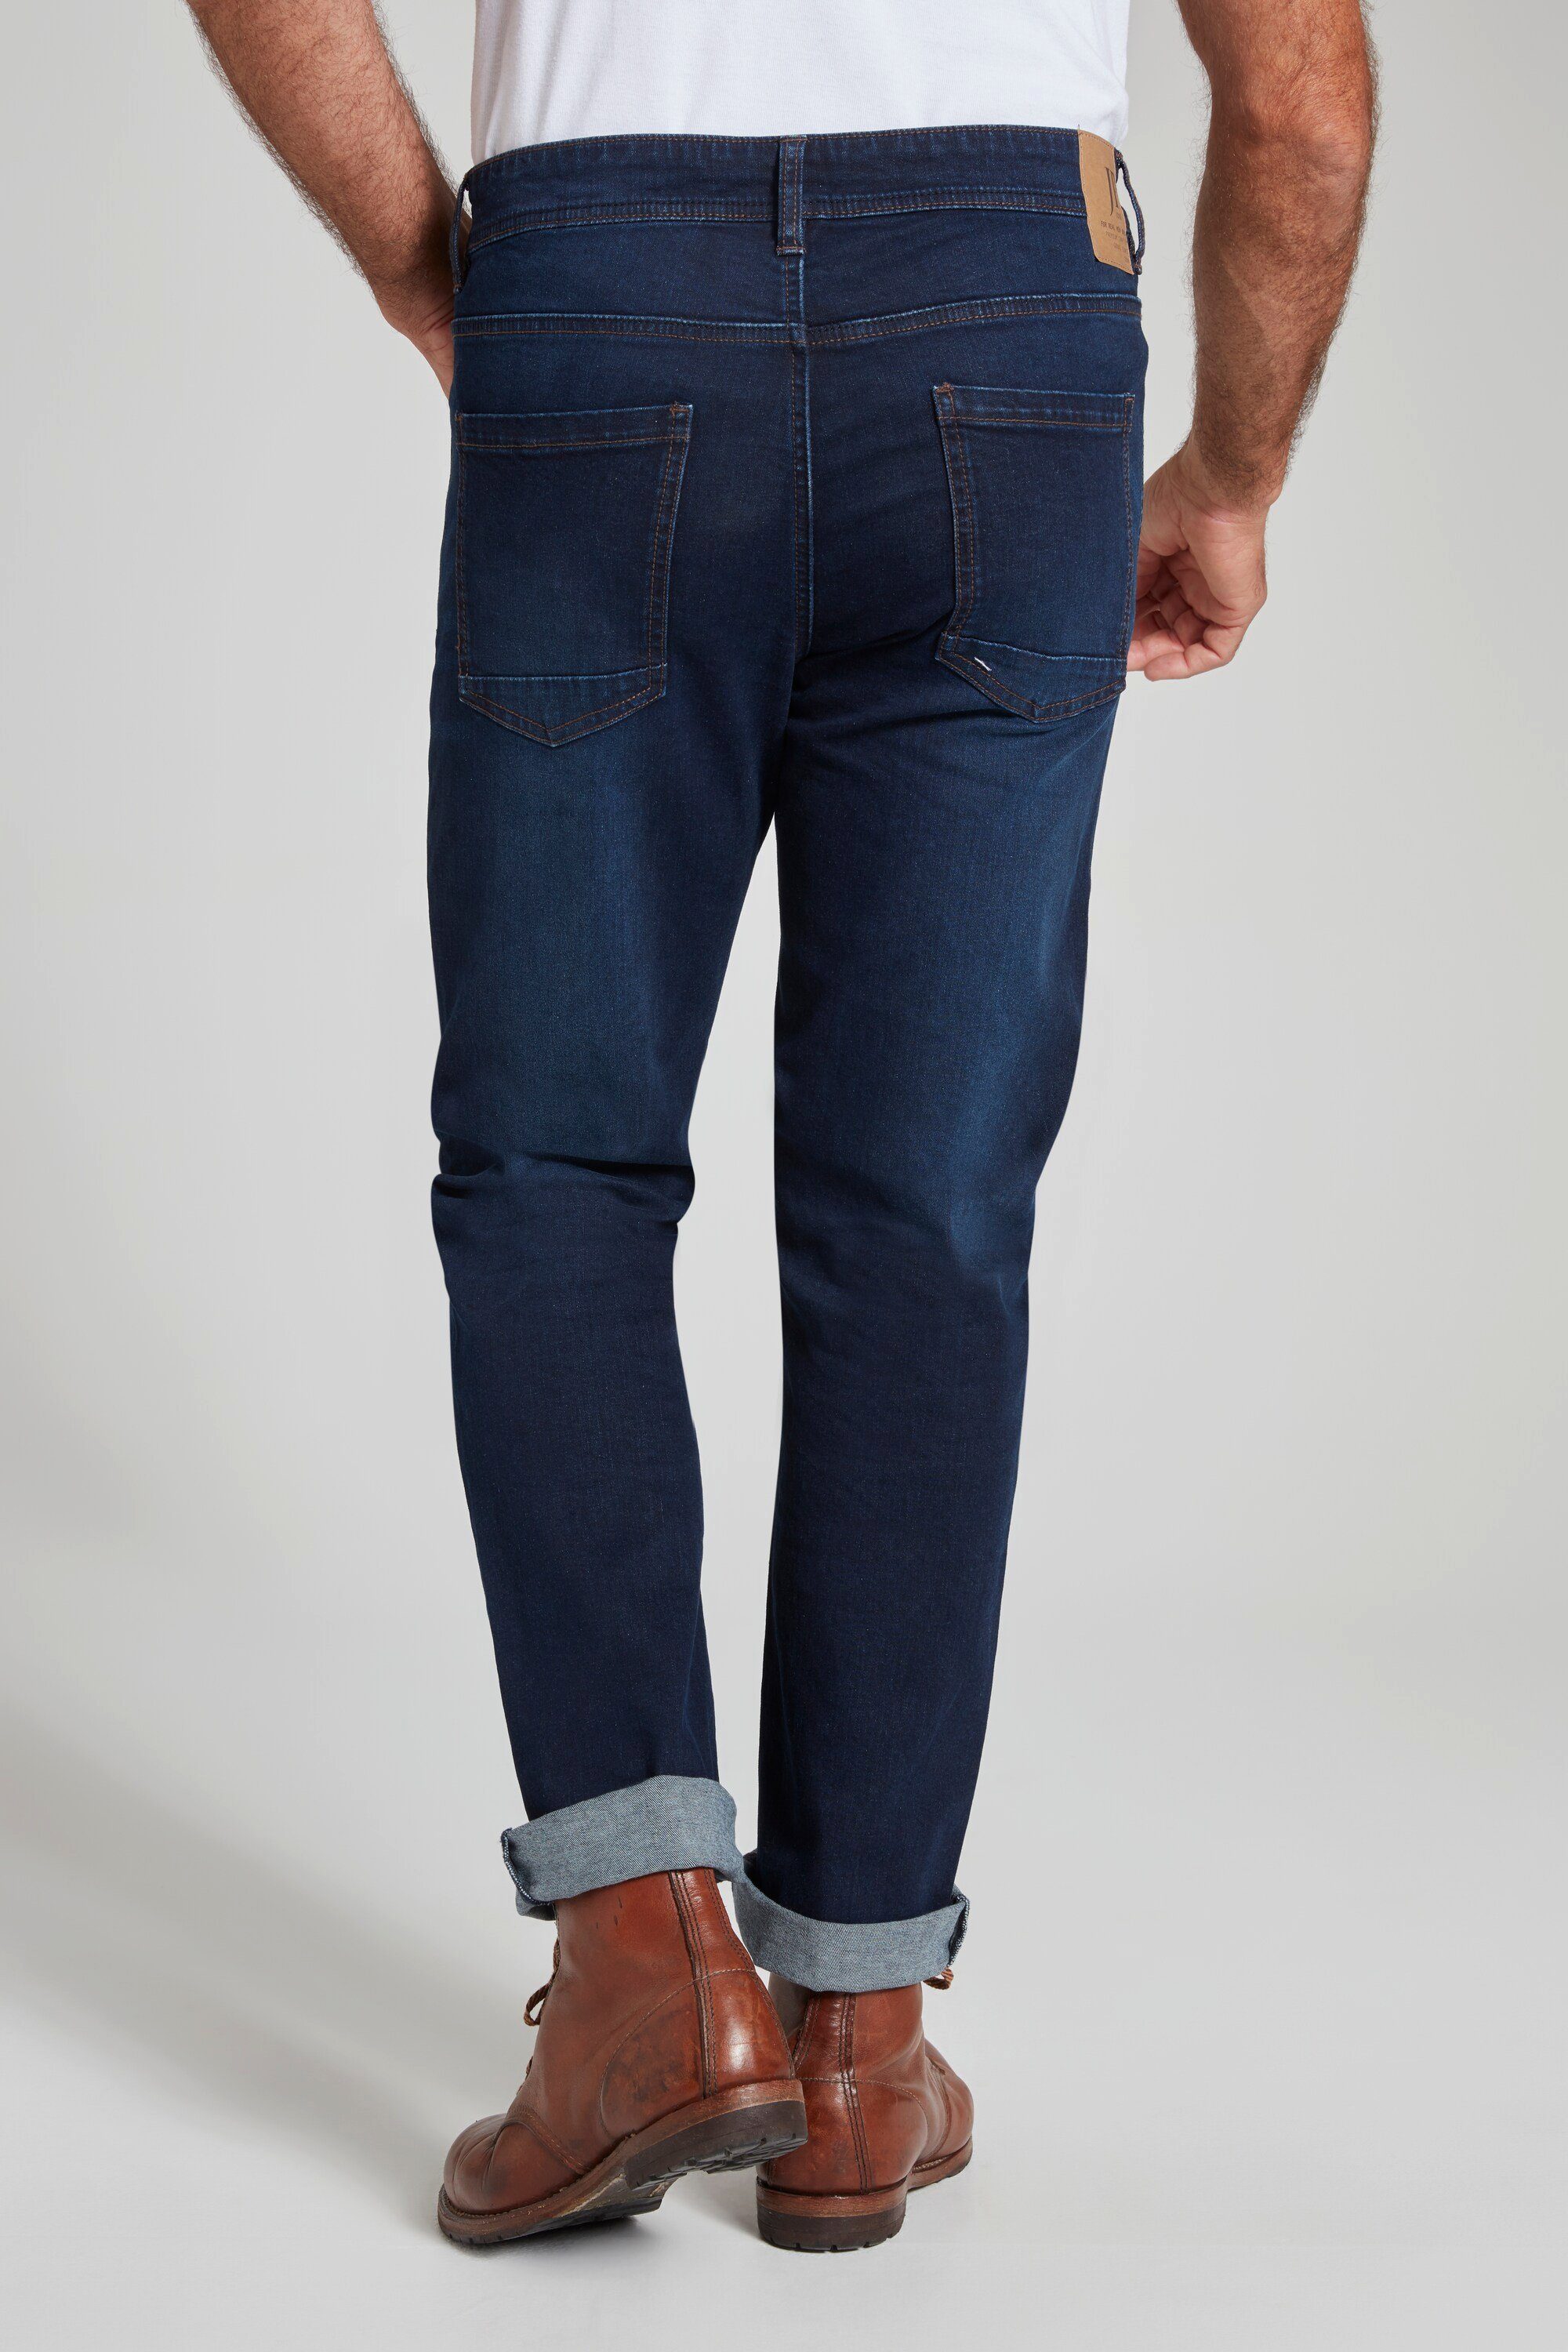 Fit Straight bis dark JP1880 Gr. FLEXNAMIC® blue 72/36 5-Pocket-Jeans denim Jeans